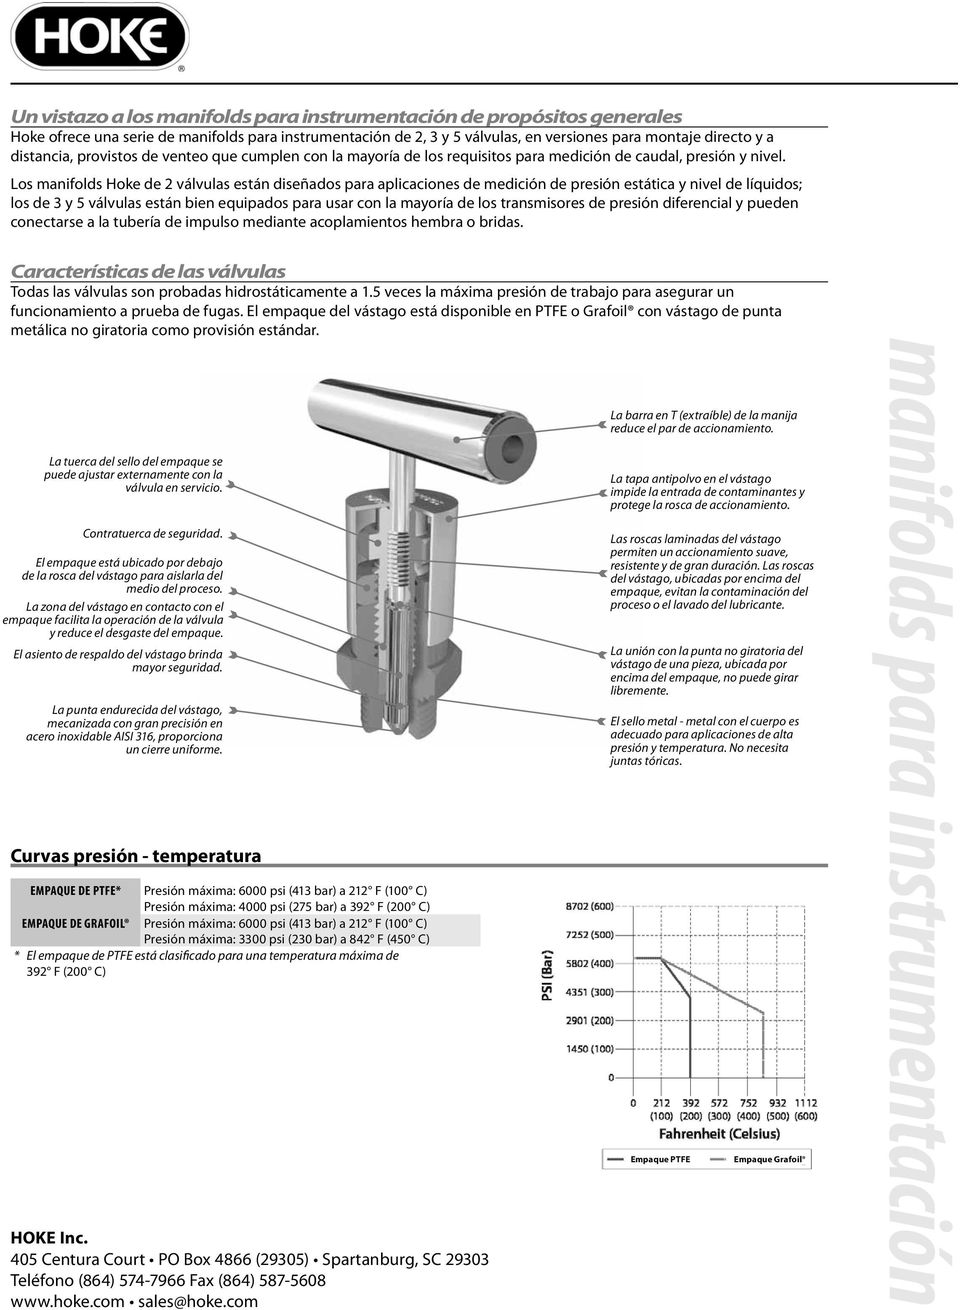 Los manifolds Hoke de 2 válvulas están diseñados para aplicaciones de medición de presión estática y nivel de líquidos; los de 3 y 5 válvulas están bien equipados para usar con la mayoría de los